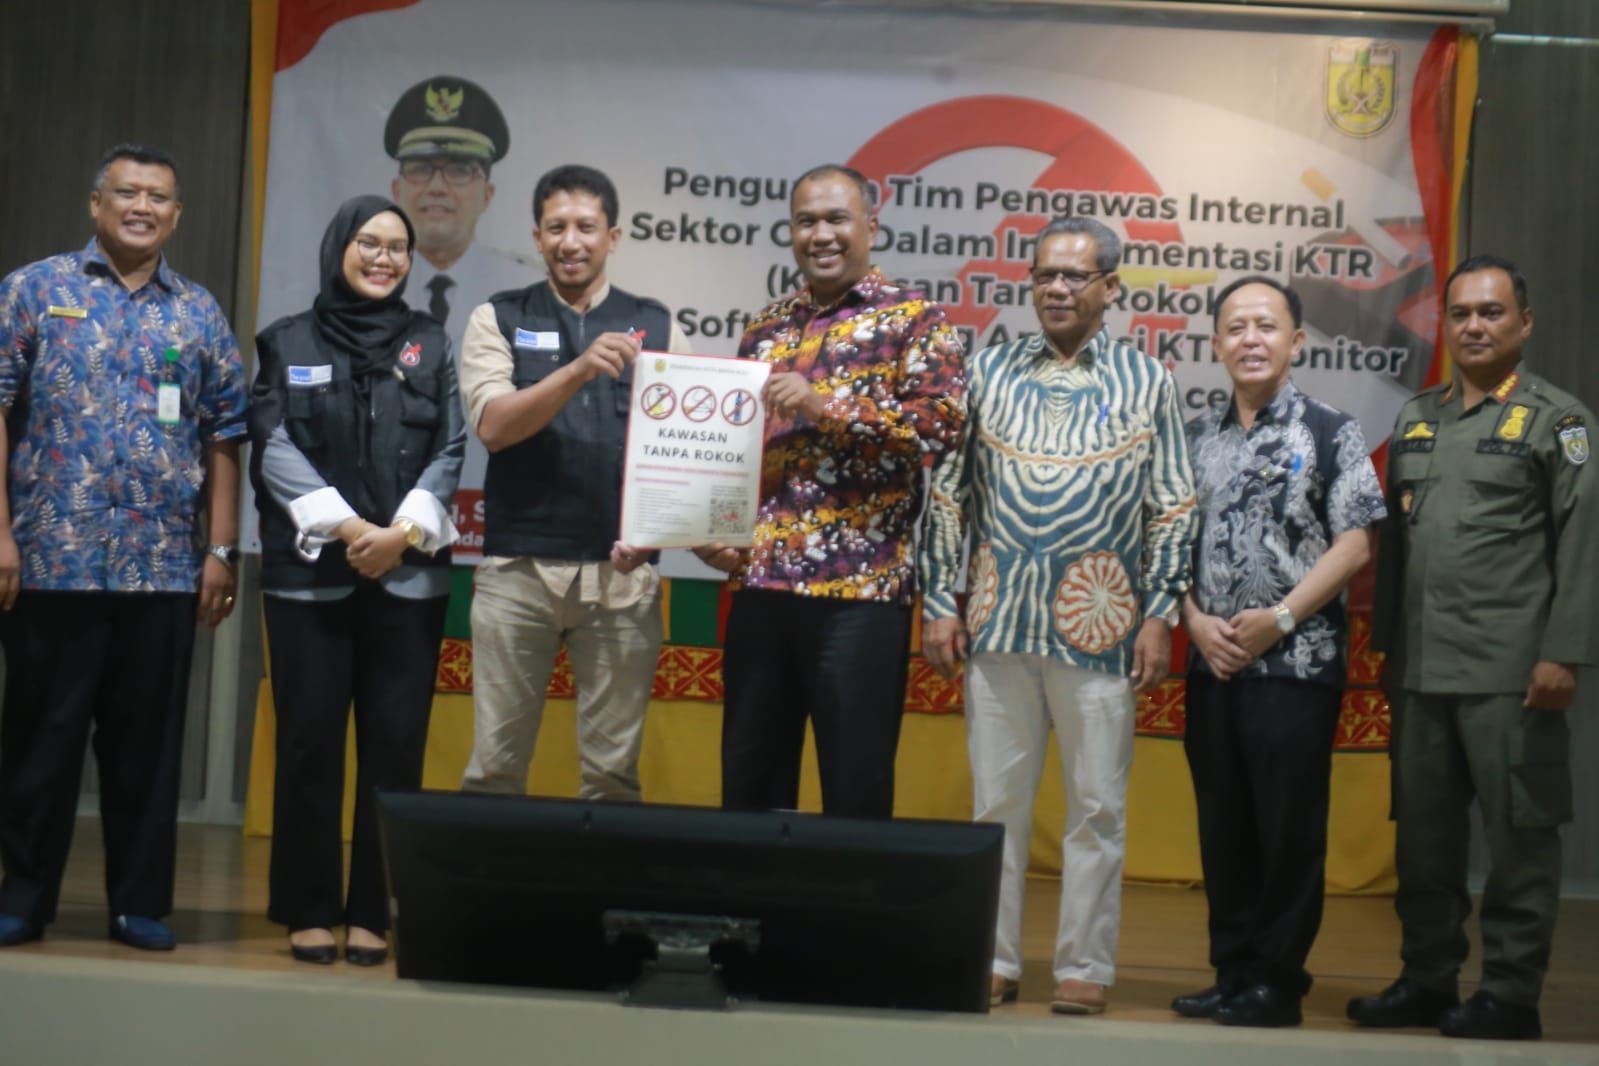 Aceh Institute launching aplikasi KTR Banda Aceh